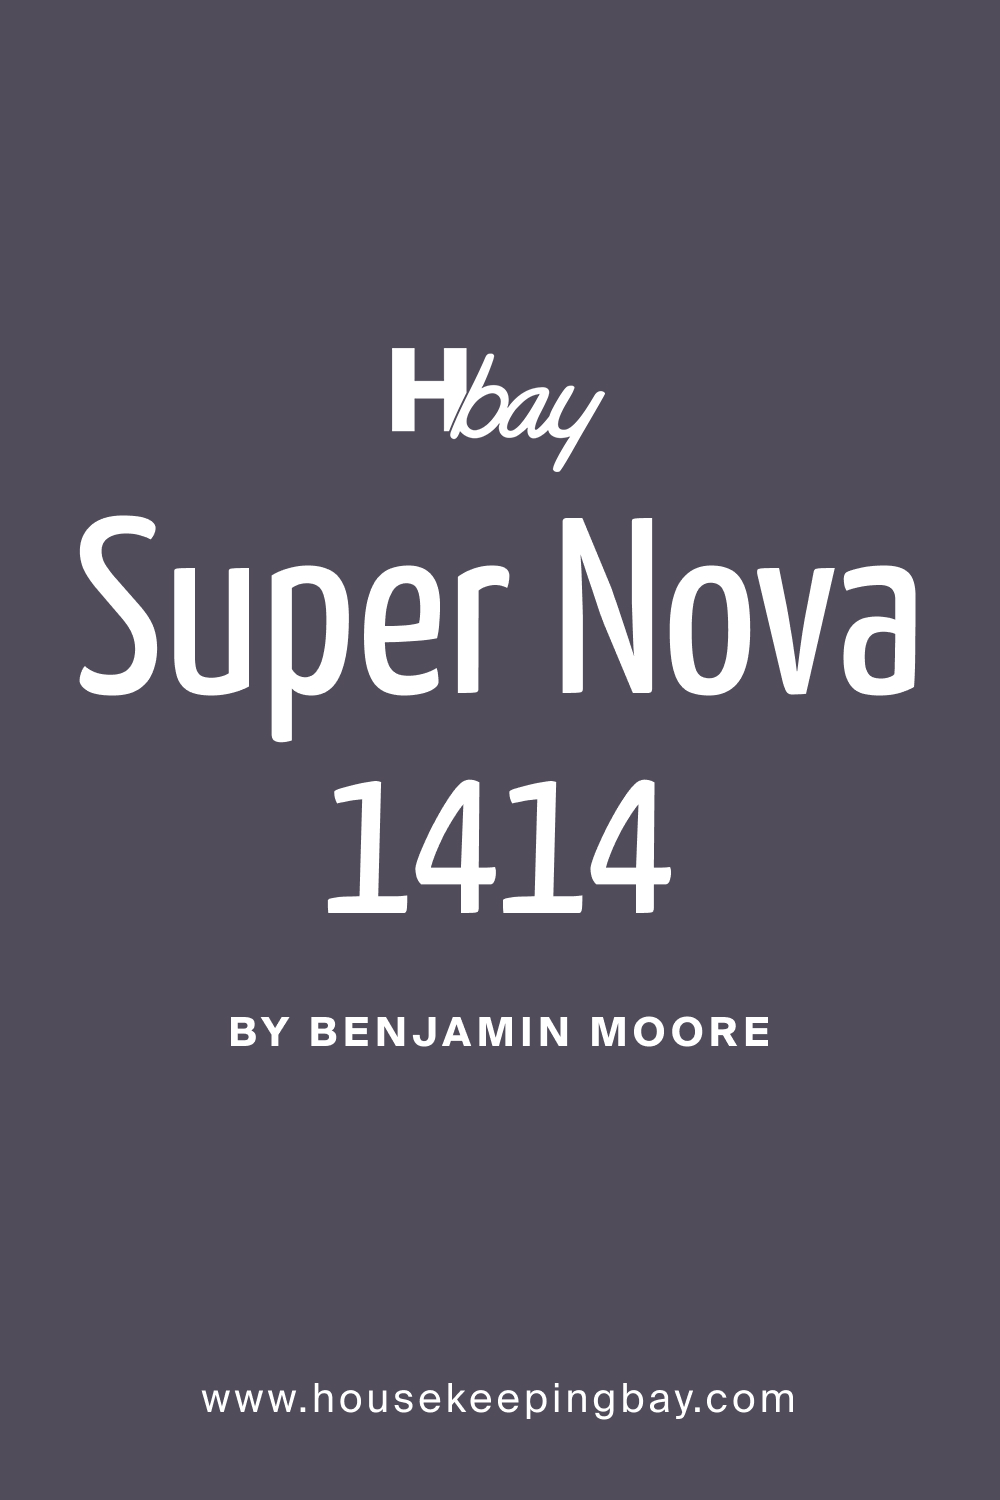 What Color Is Super Nova 1414?